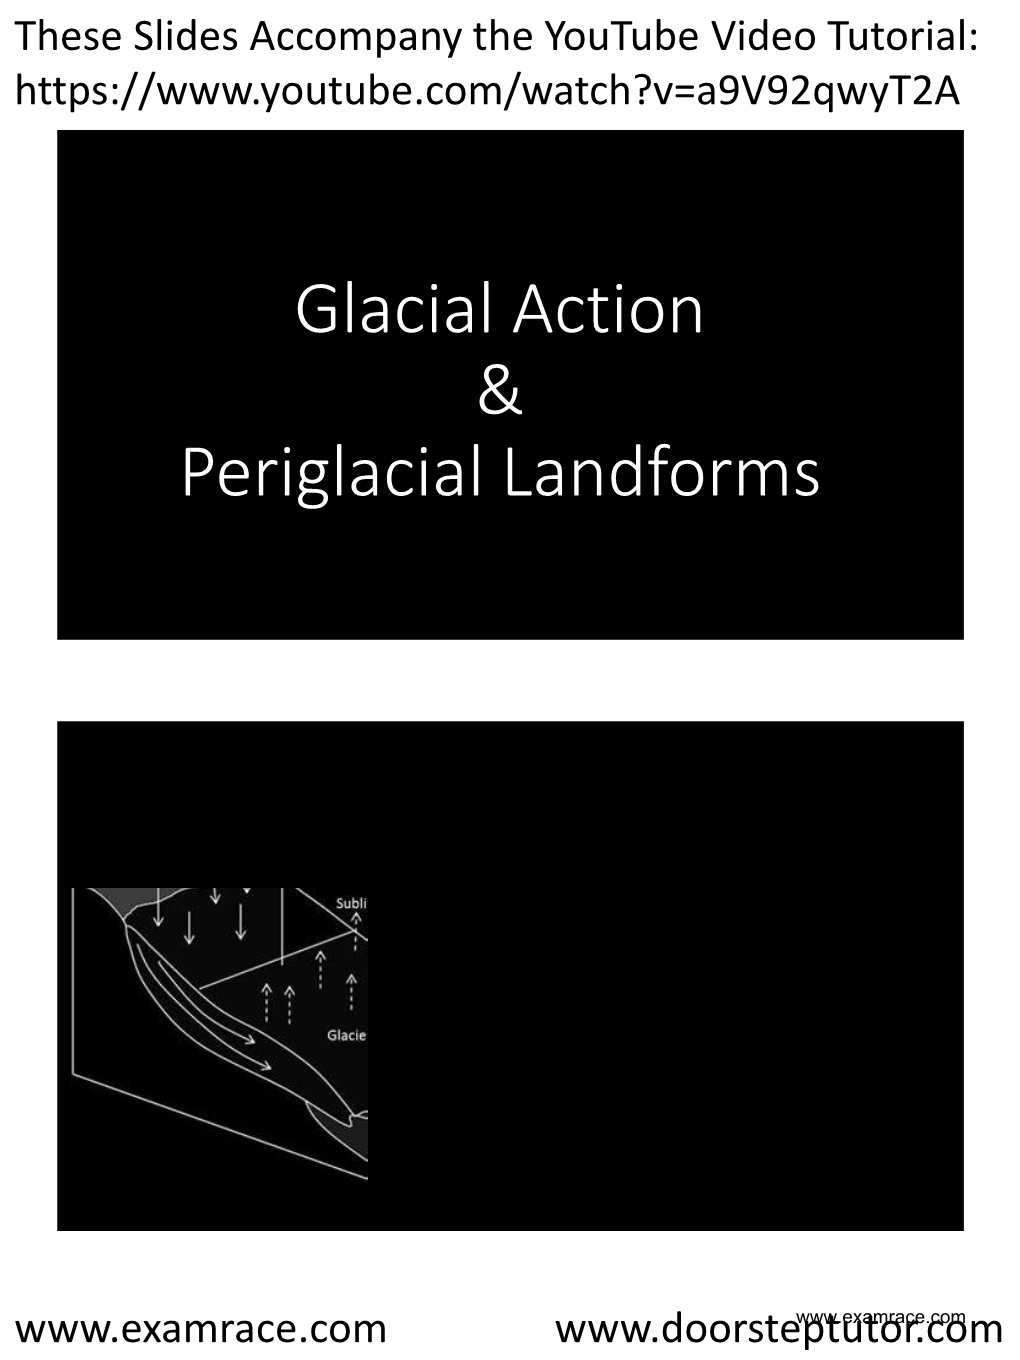 Glacial Action & Periglacial Landforms